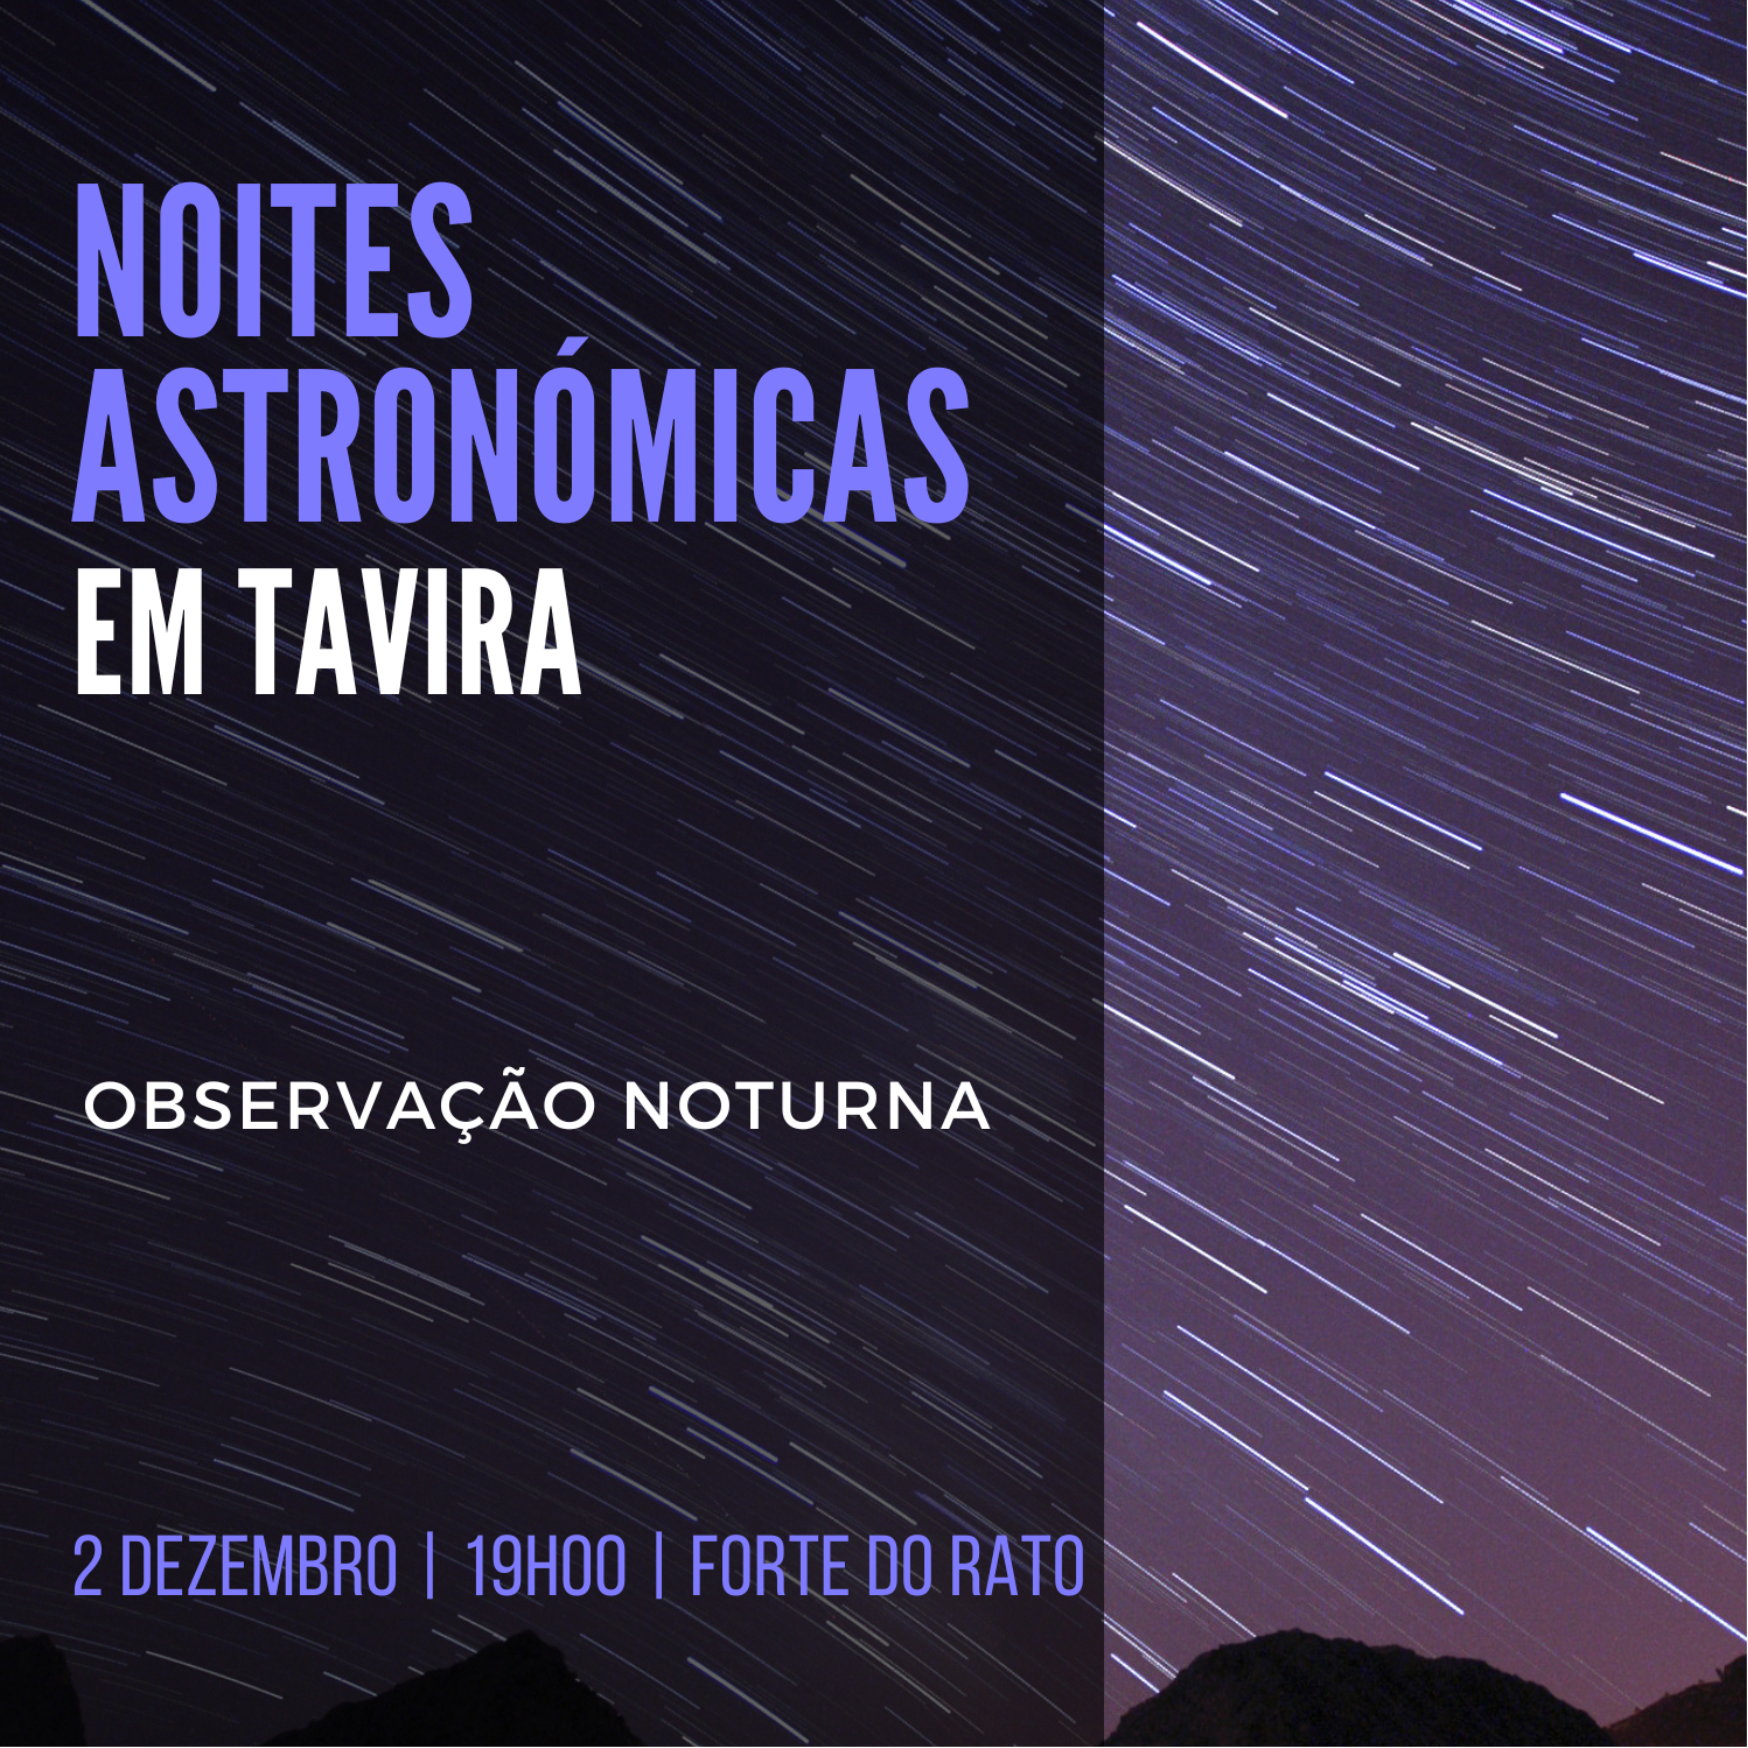 Noites Astronómicas em Tavira - Observação noturna